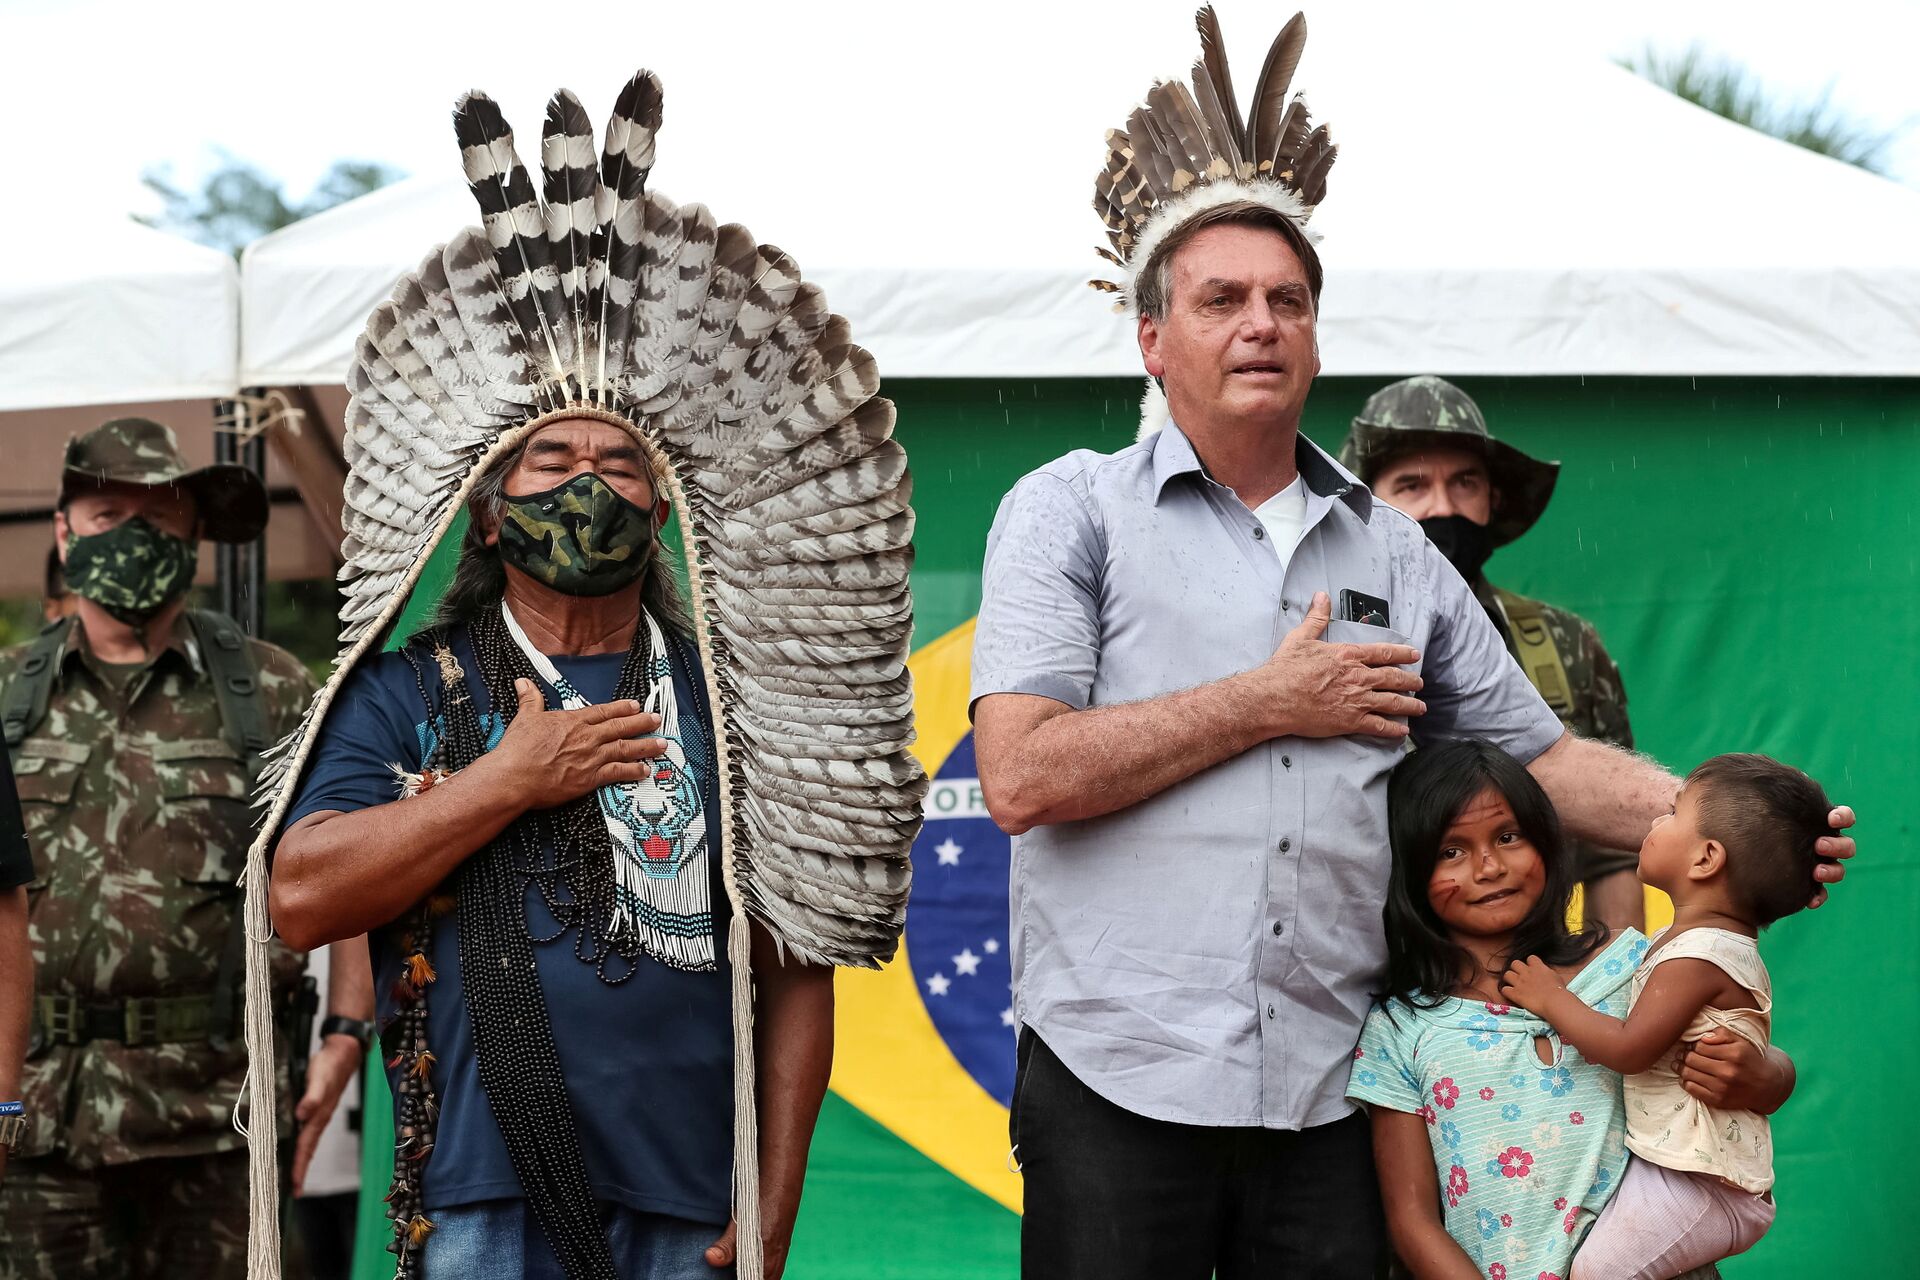 Uso da Força Nacional na Terra Yanomami é autorizado pelo Ministério da Justiça - Sputnik Brasil, 1920, 14.06.2021